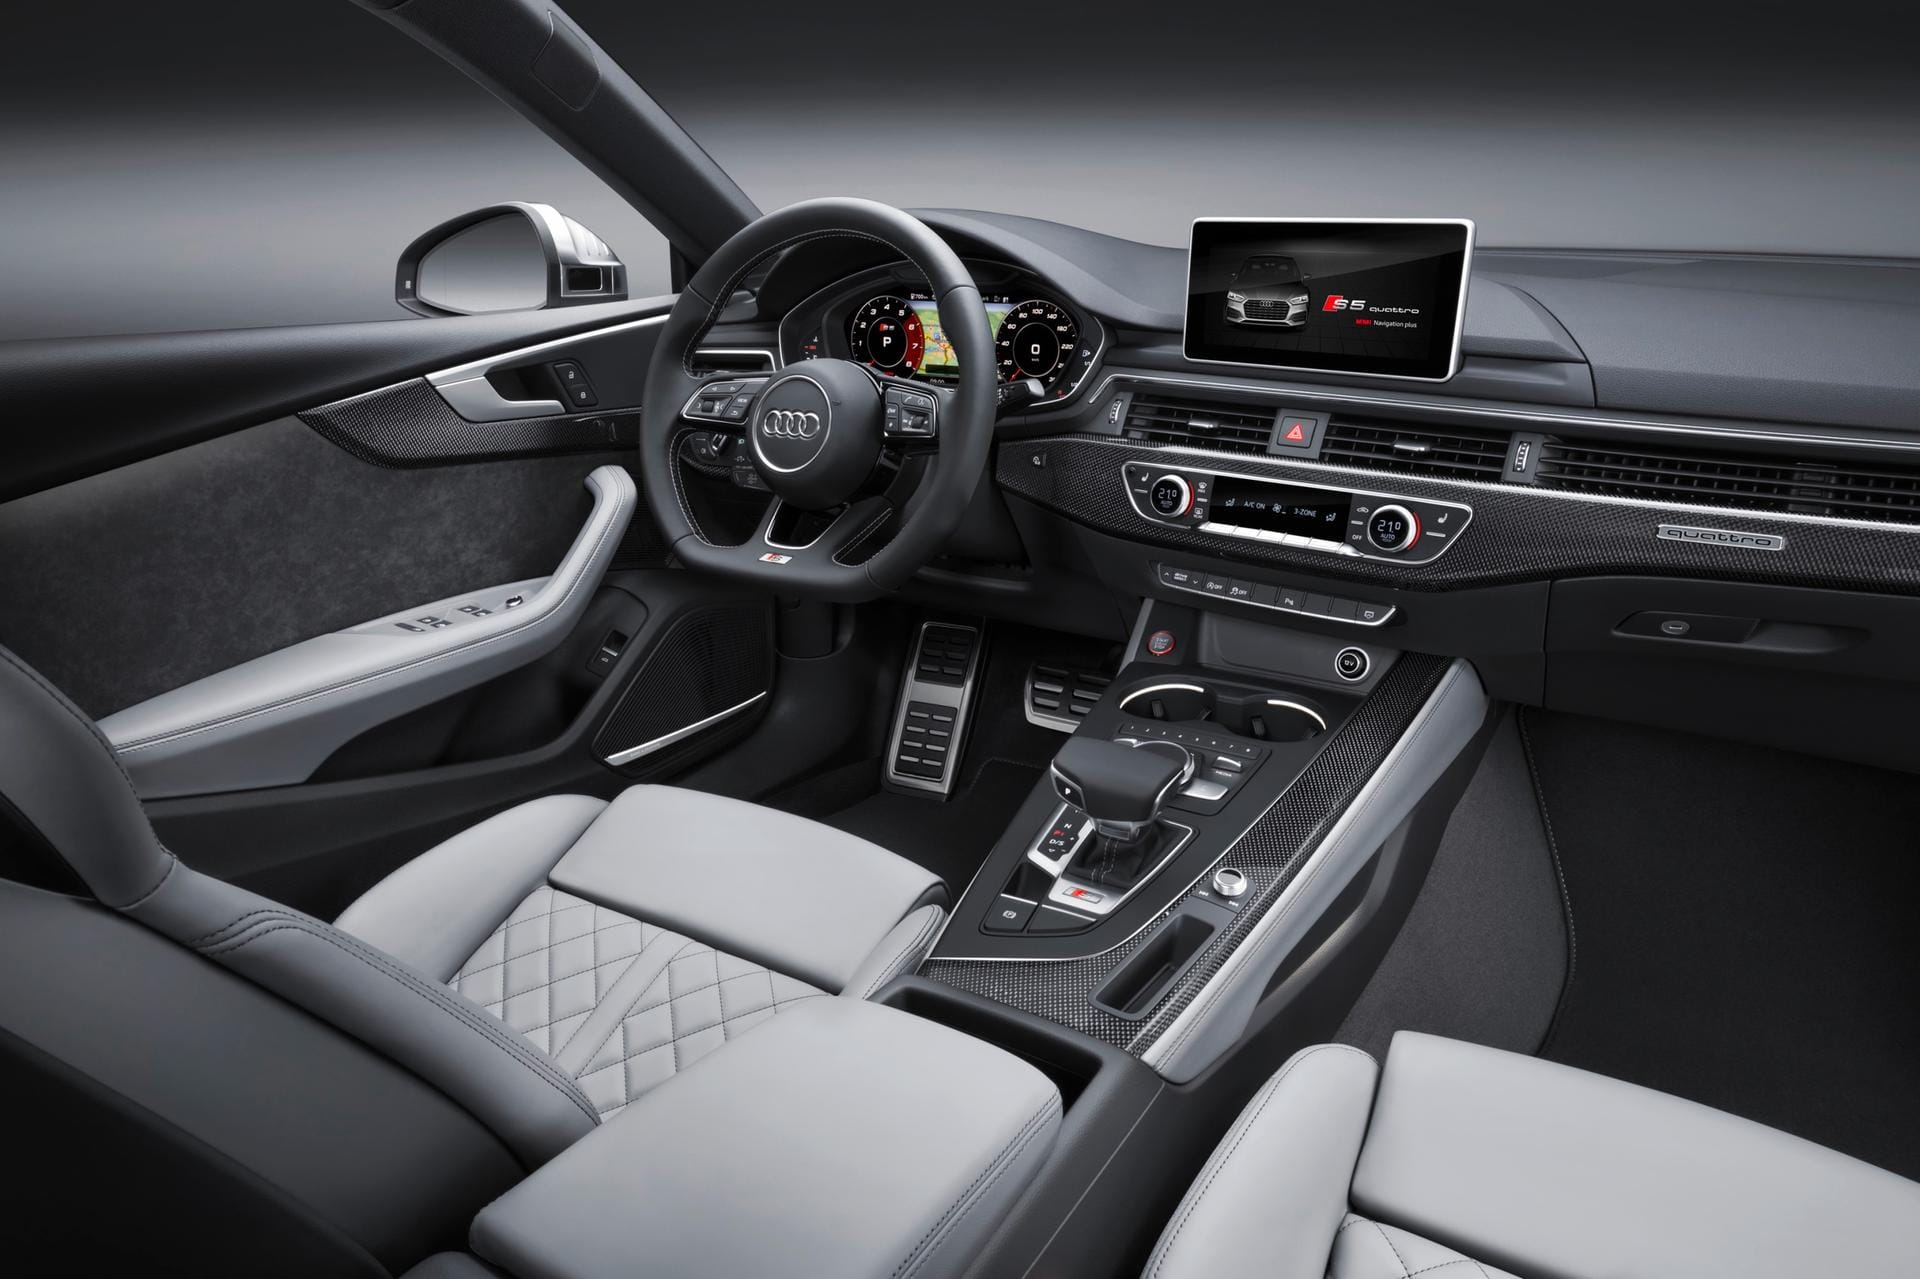 Audi bietet viele Technikneuerungen für den A5 Sportback. Allerdings sind diverse Innovationen aufpreispflichtig.